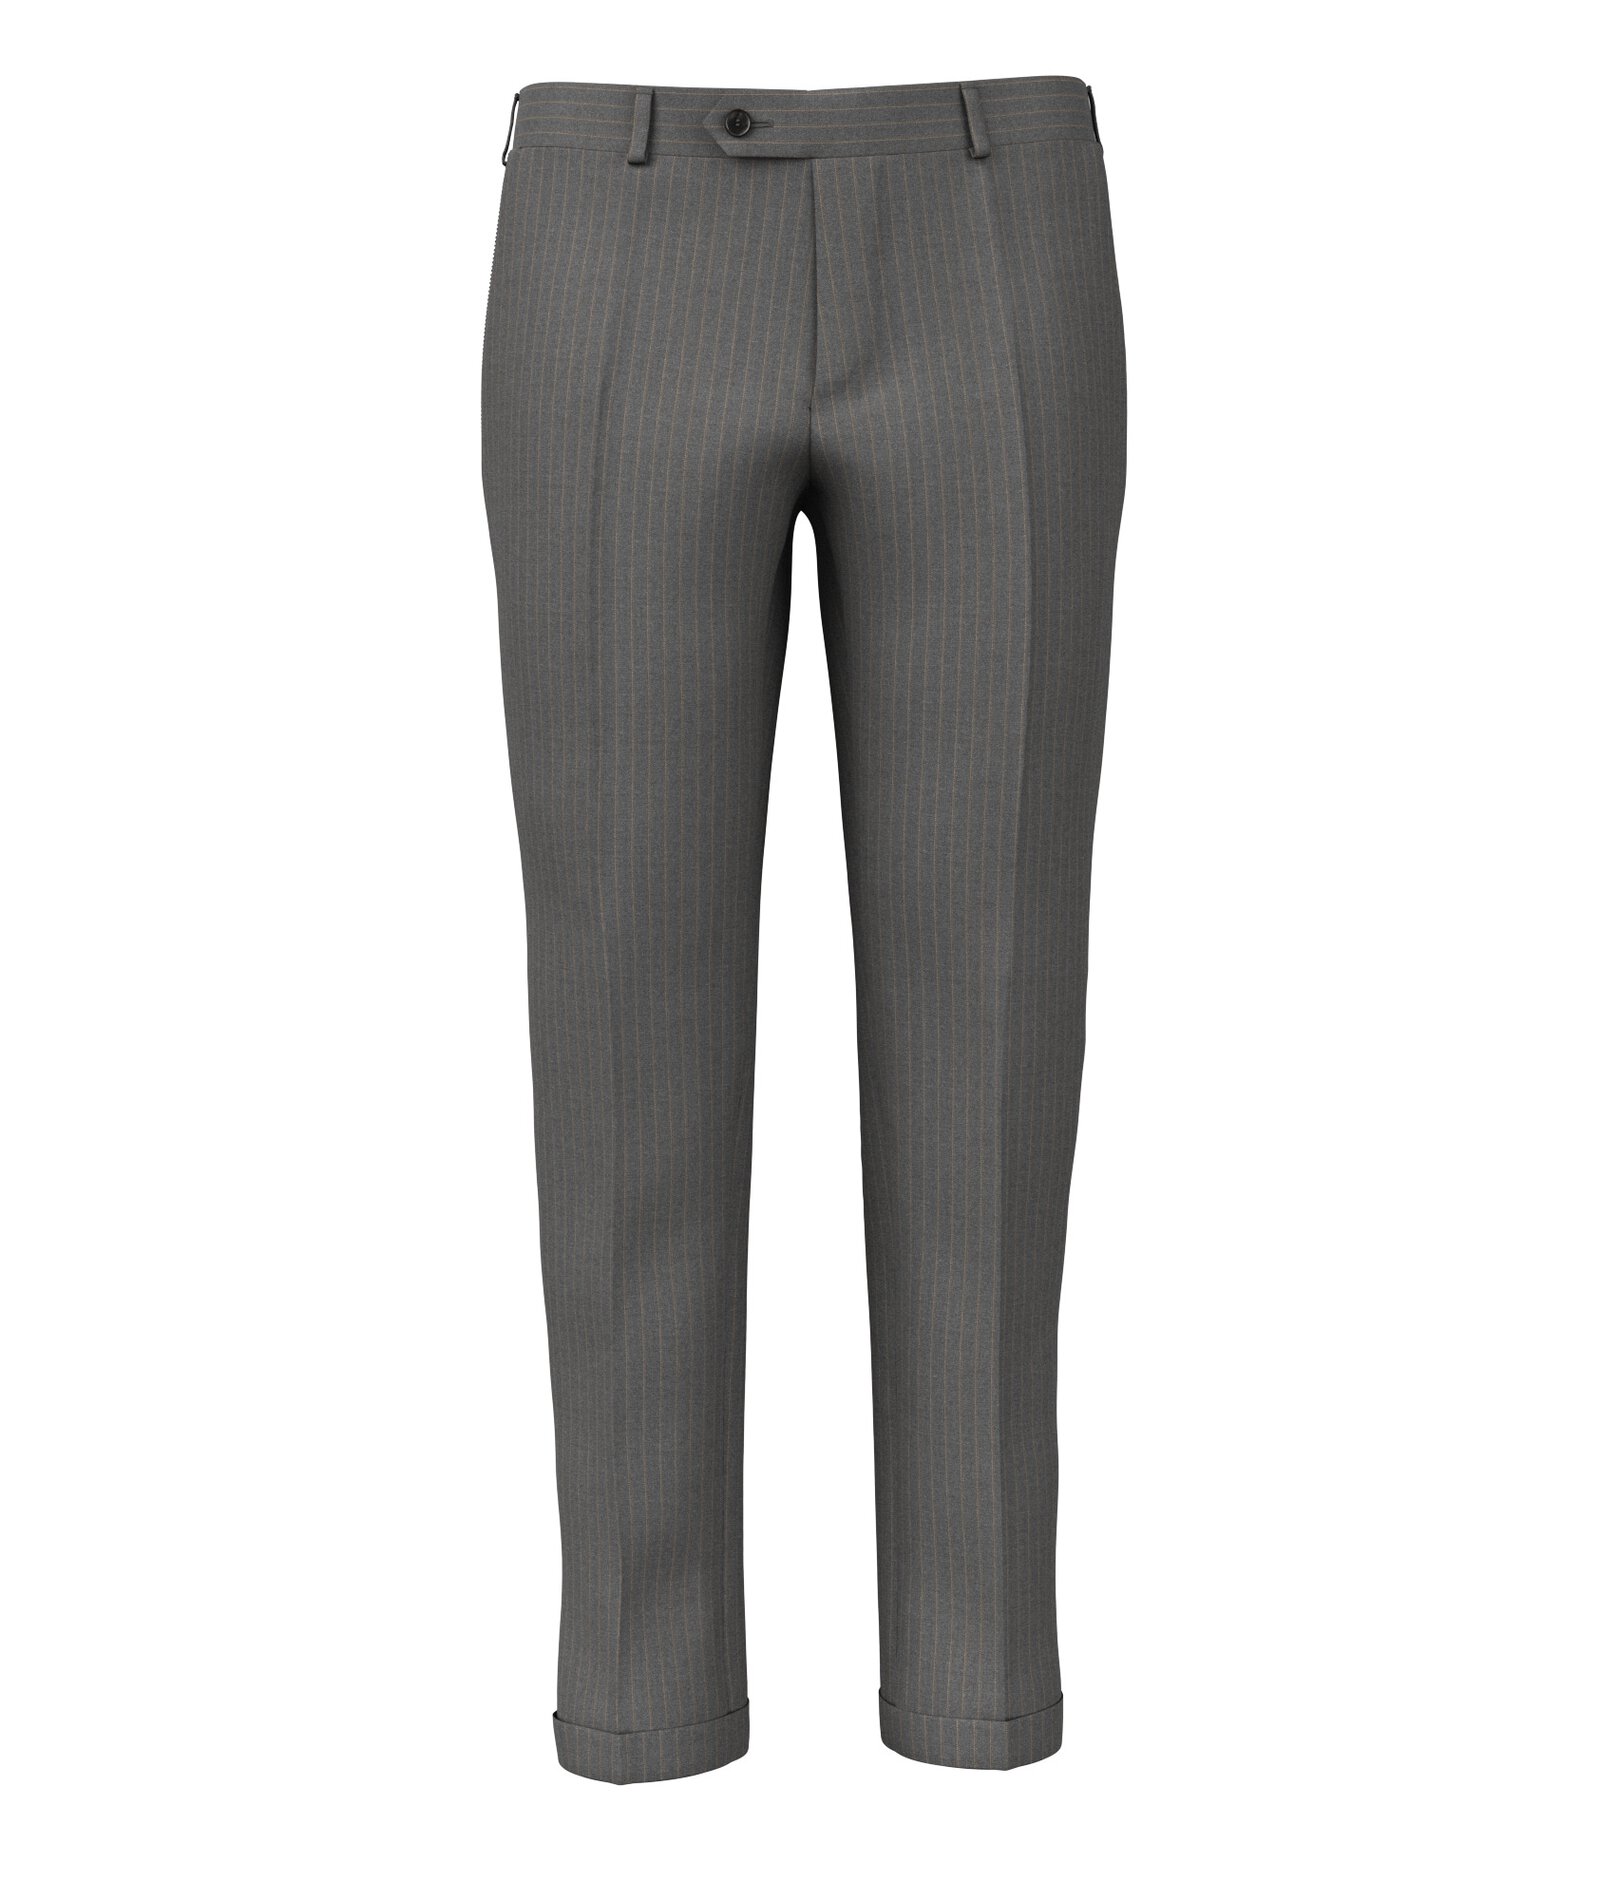 Image of Pantaloni da uomo su misura, Vitale Barberis Canonico, Grigio scuro in Twill di Lana Gessato, Quattro Stagioni | Lanieri